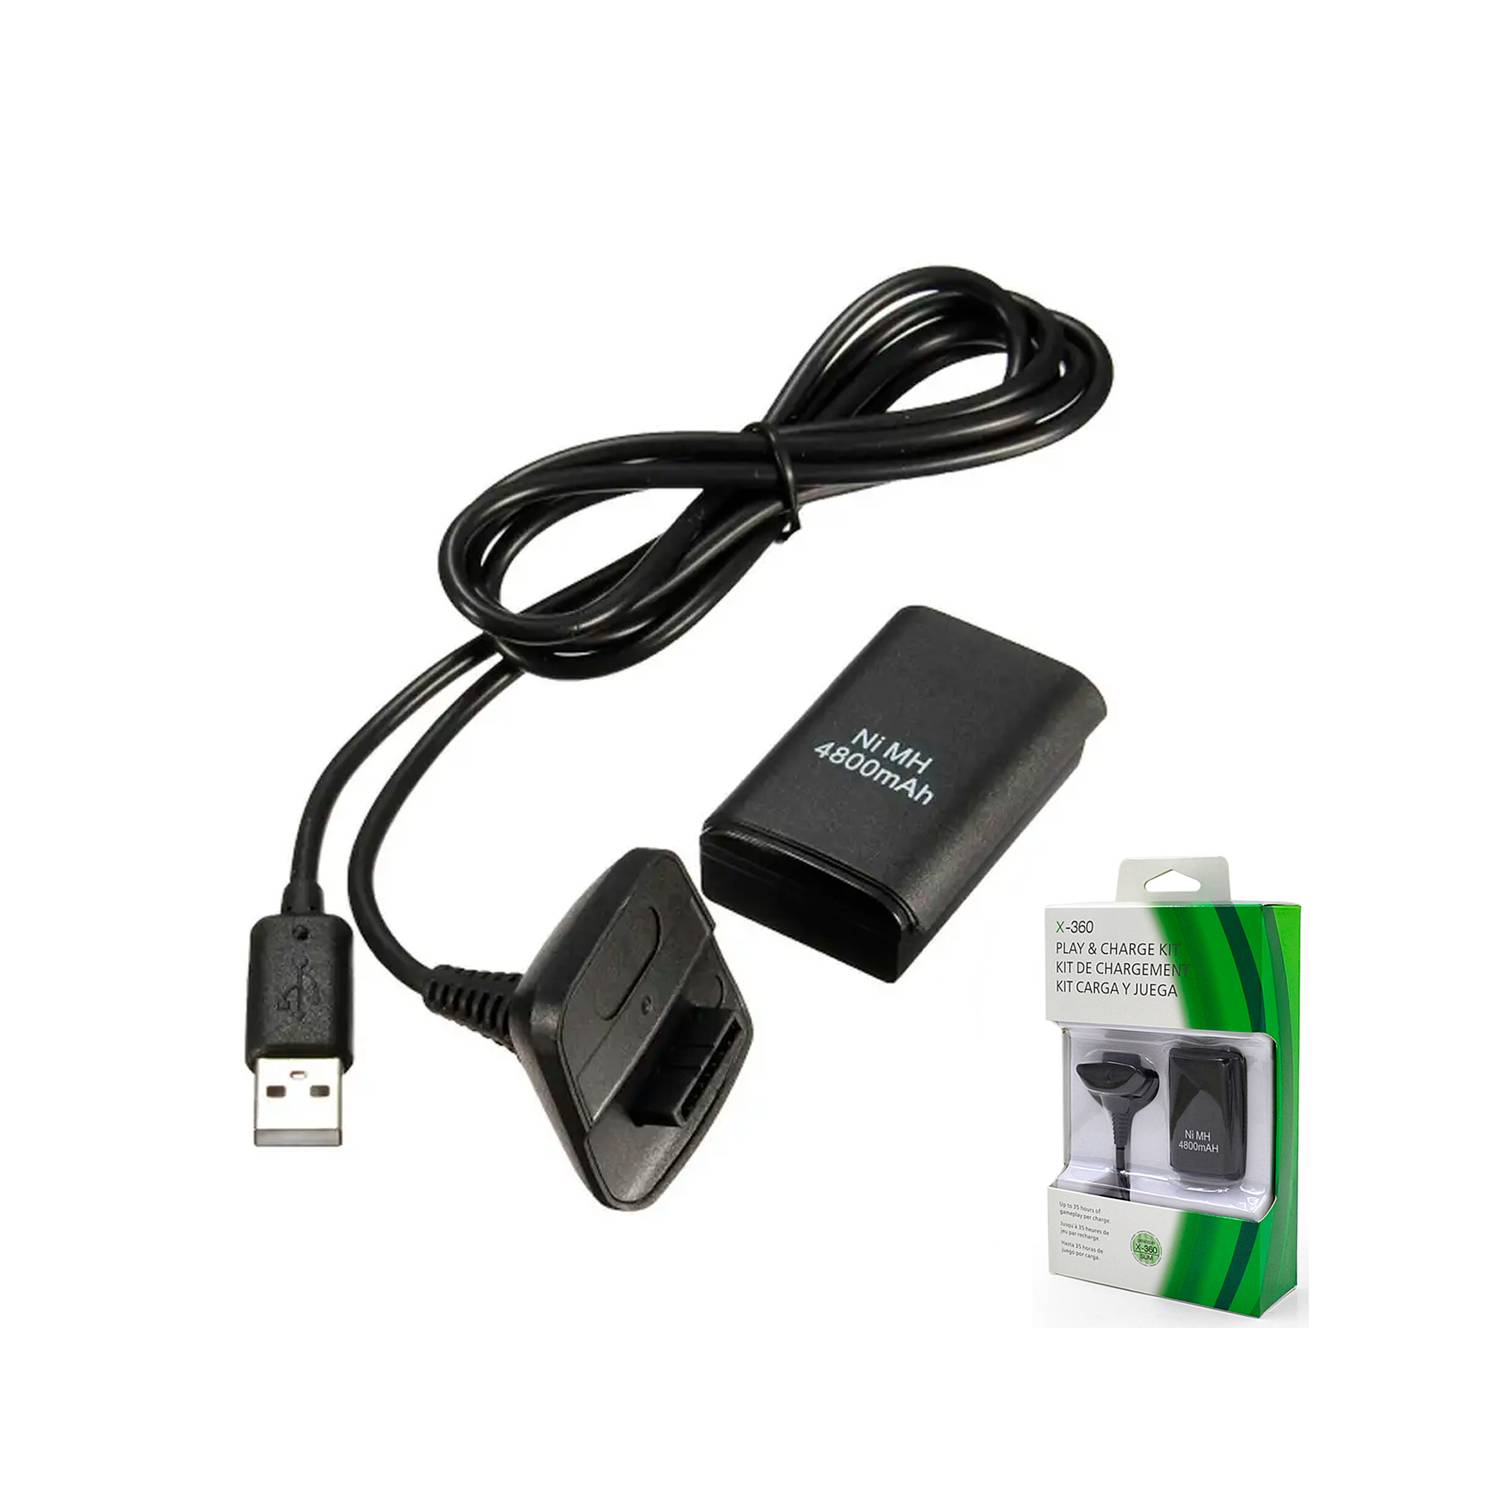 Bateria Recargable para Controles Inalambricos Xbox 360 4,800mAh + Cable  USB para Cargar